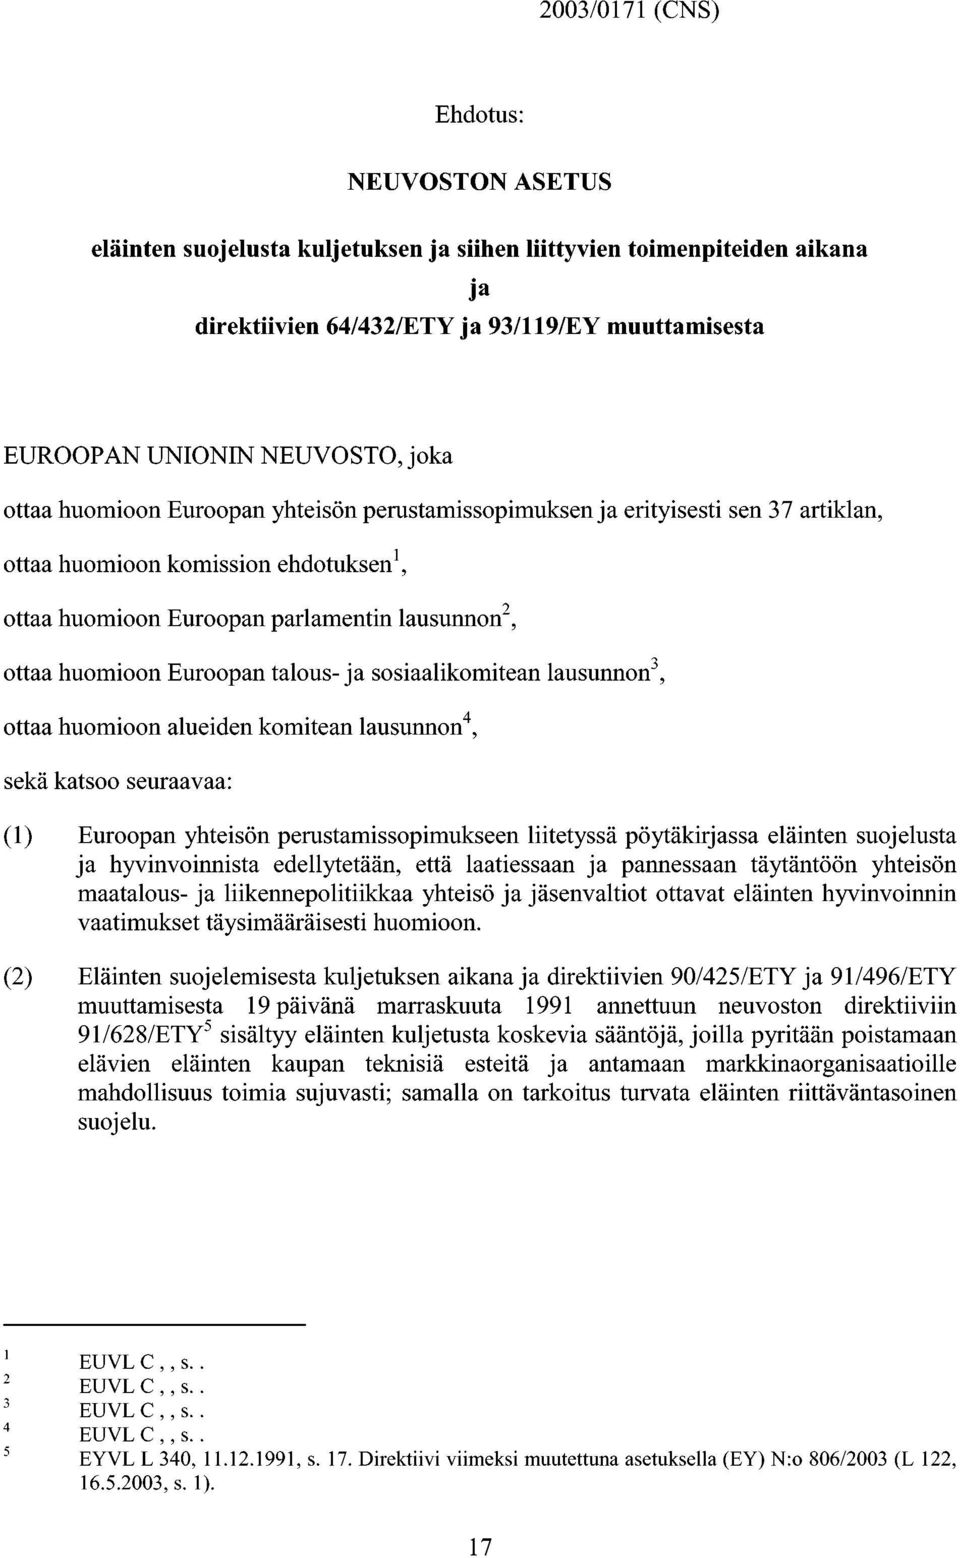 Euroopan talous-ja sosiaalikomitean lausunnon 3, ottaa huomioon alueiden komitean lausunnon 4, sekä katsoo seuraavaa: (1) Euroopan yhteisön perustamissopimukseen liitetyssä pöytäkirjassa eläinten